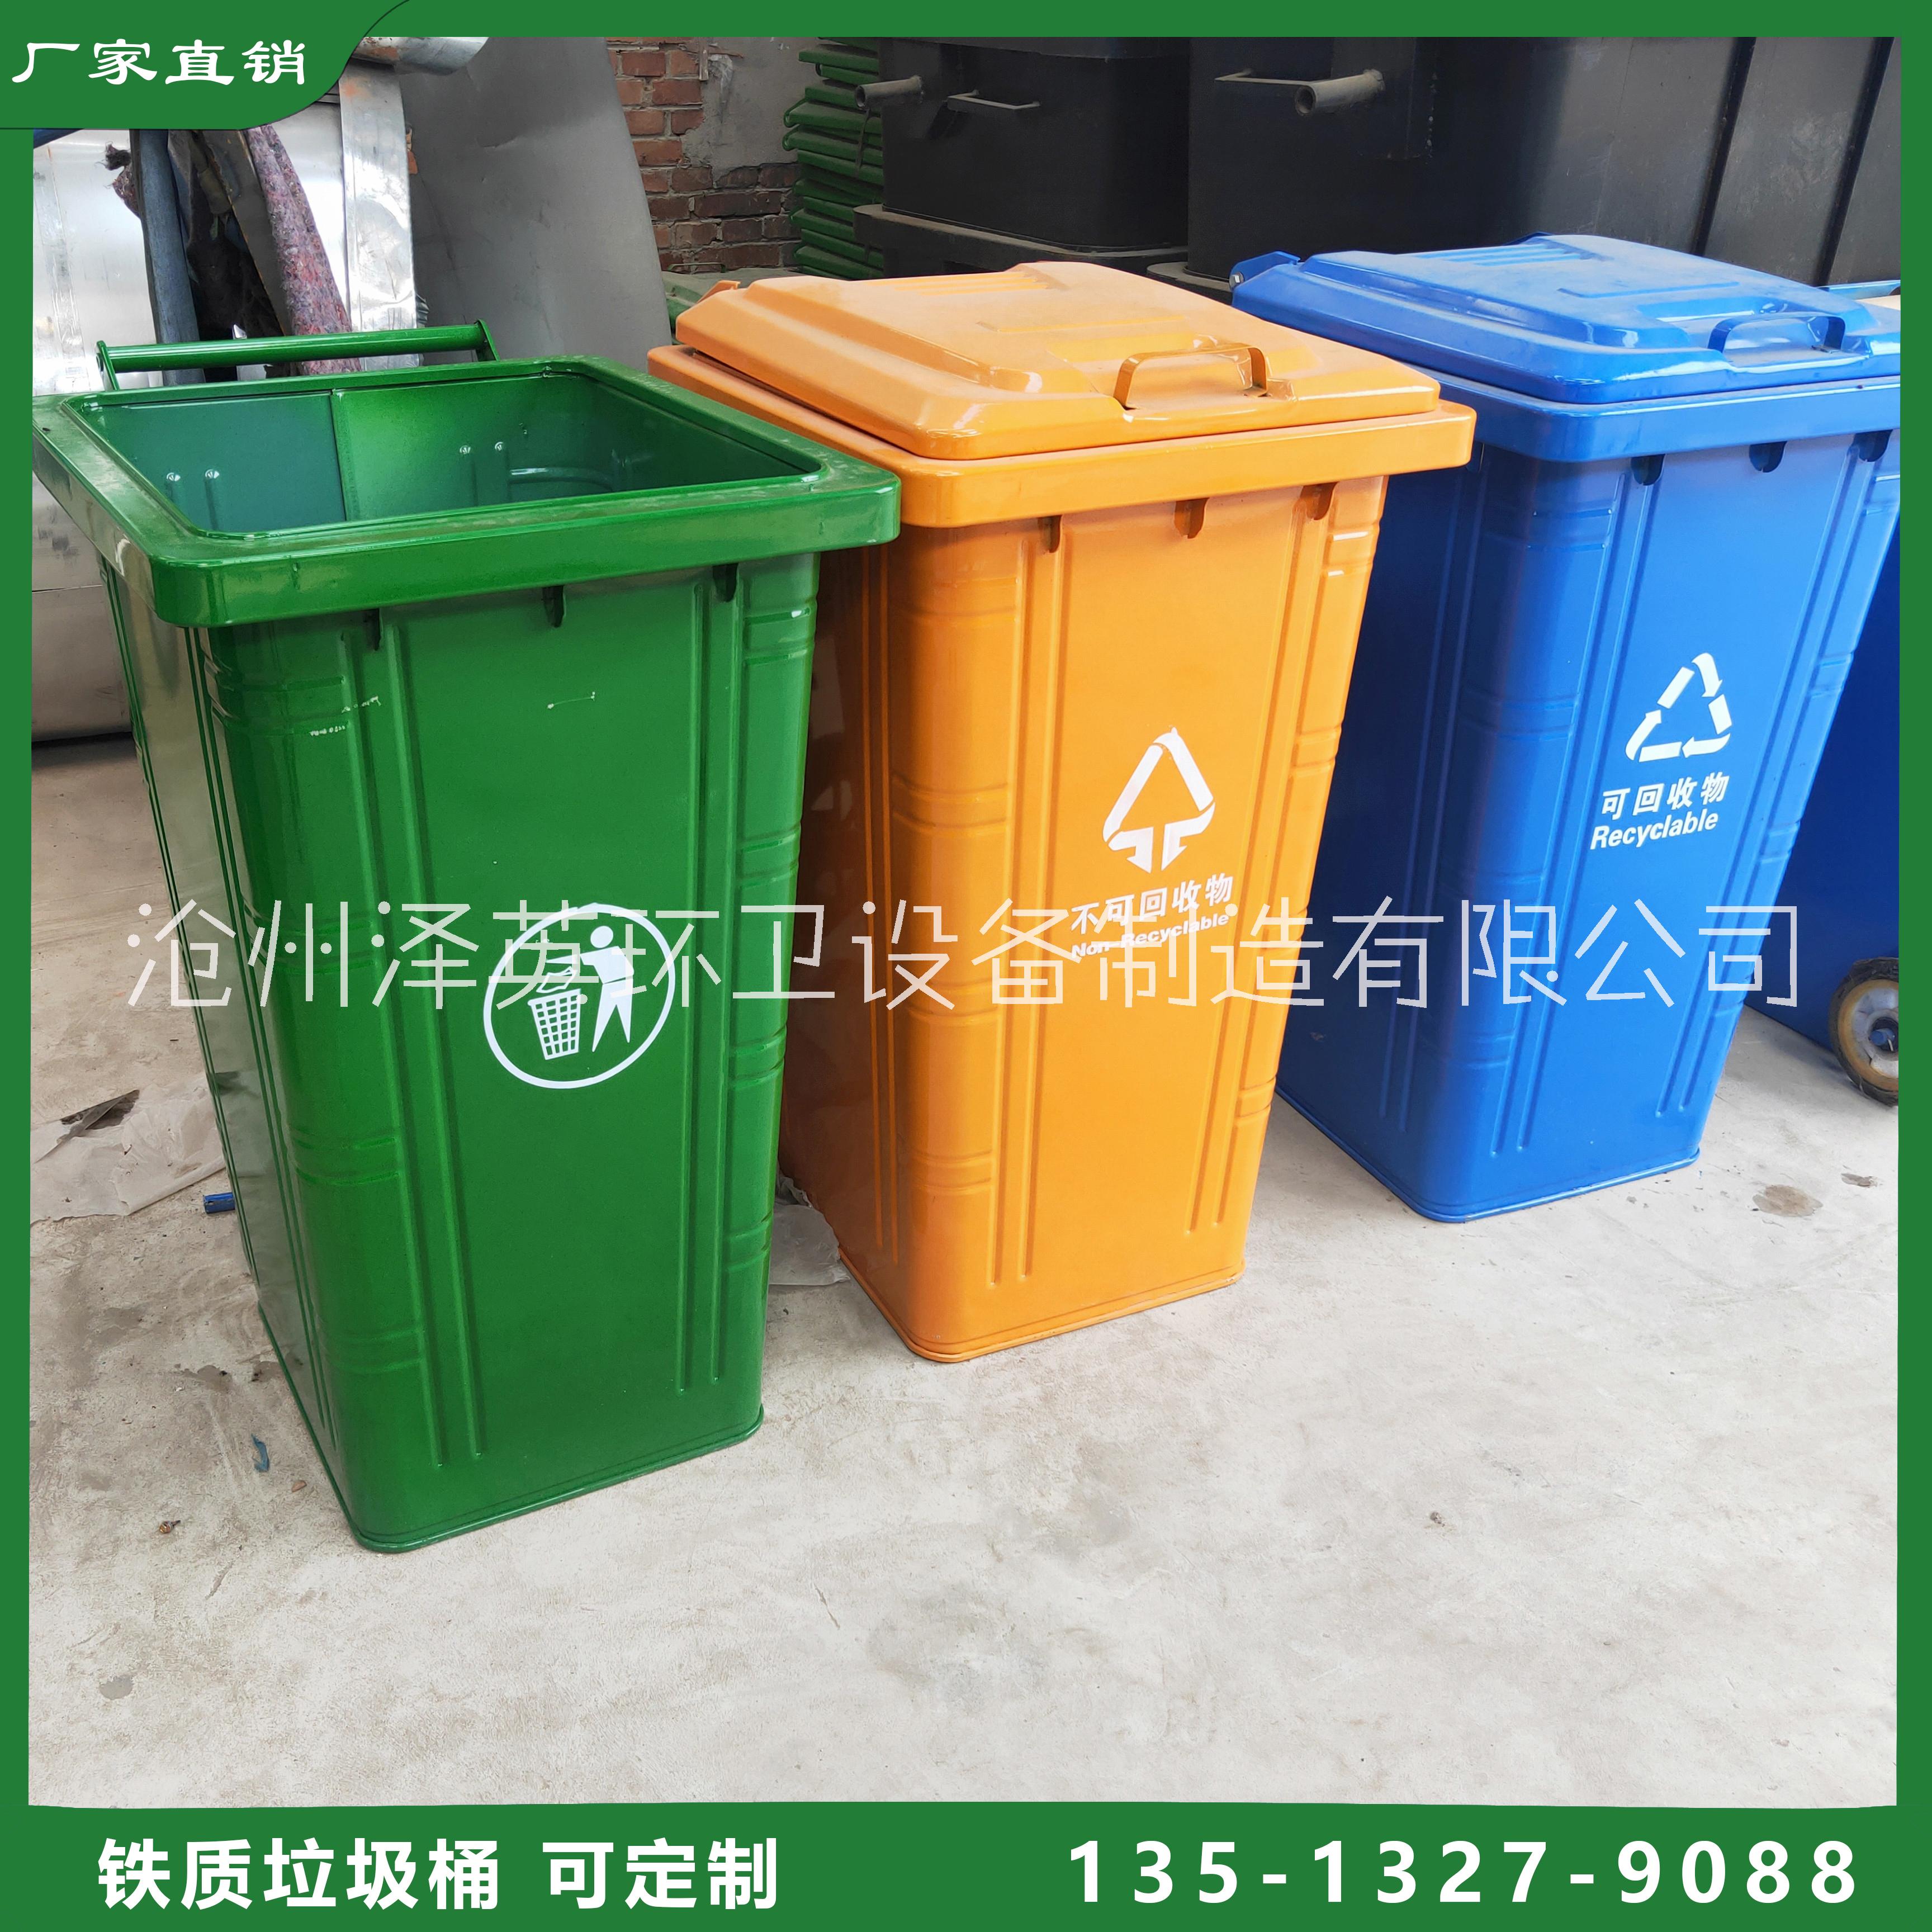 240L铁质垃圾桶 挂车户外垃圾桶 铁质环保垃圾桶批发图片